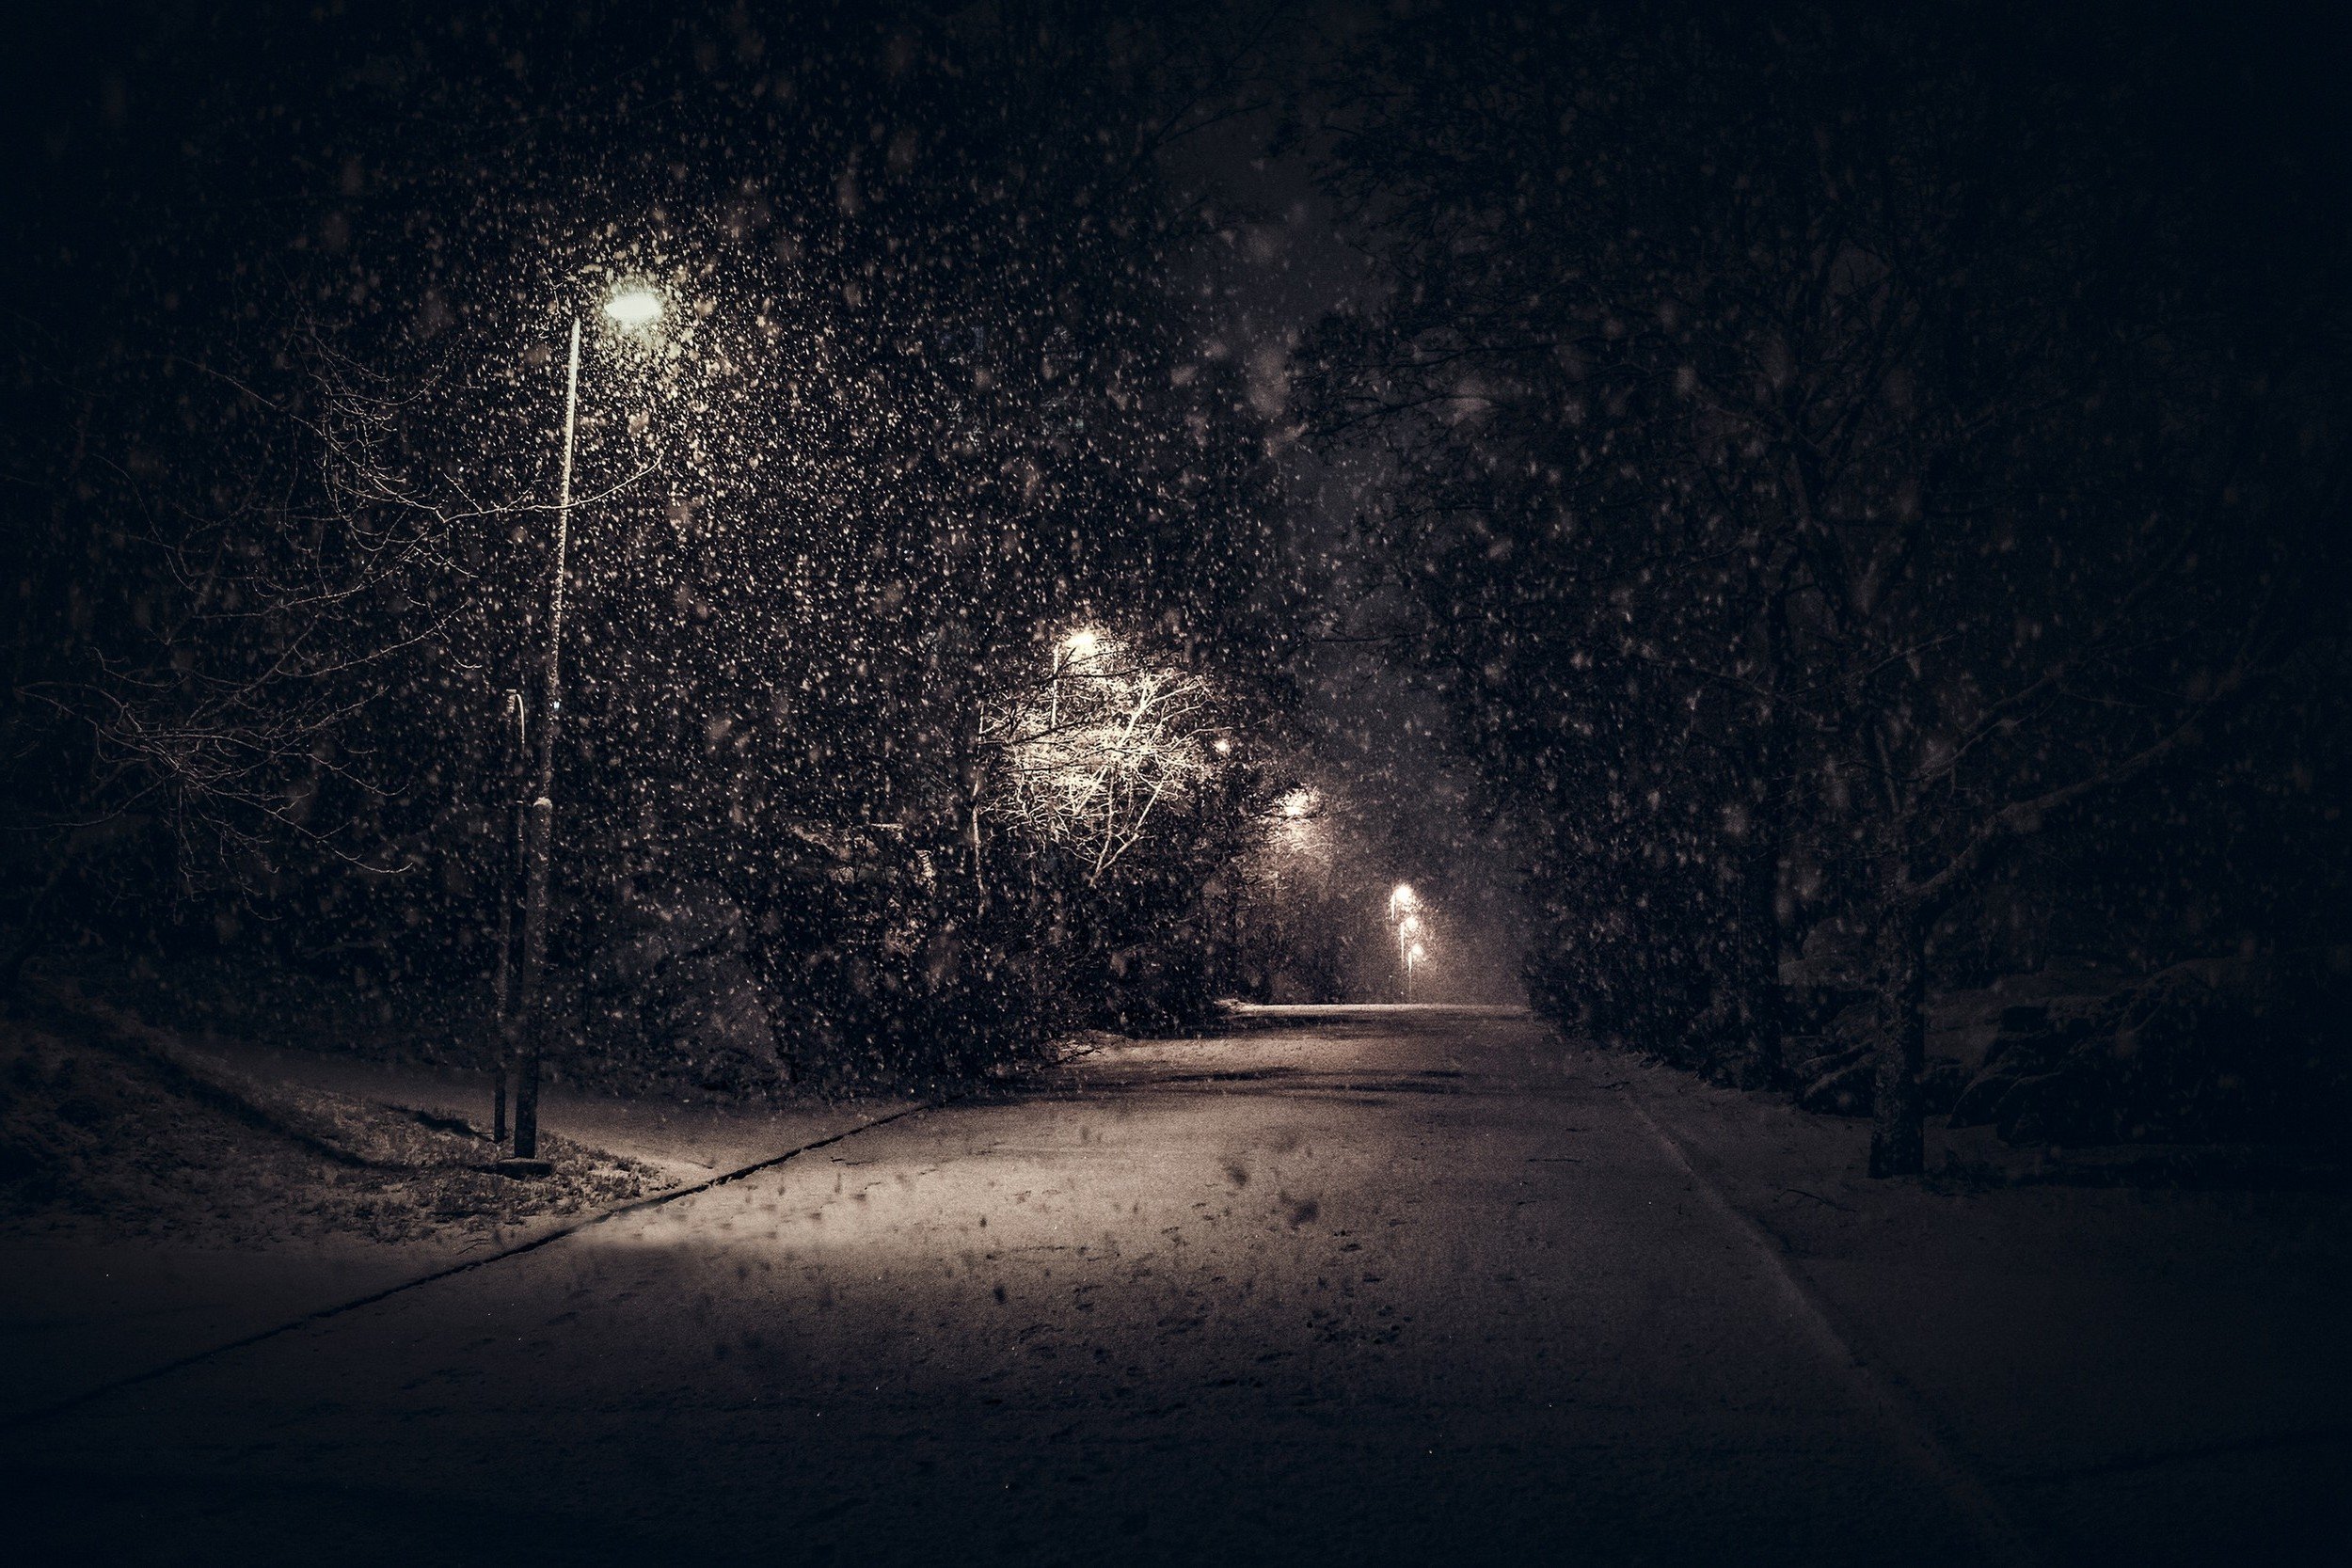 Снежок на дорогу падает